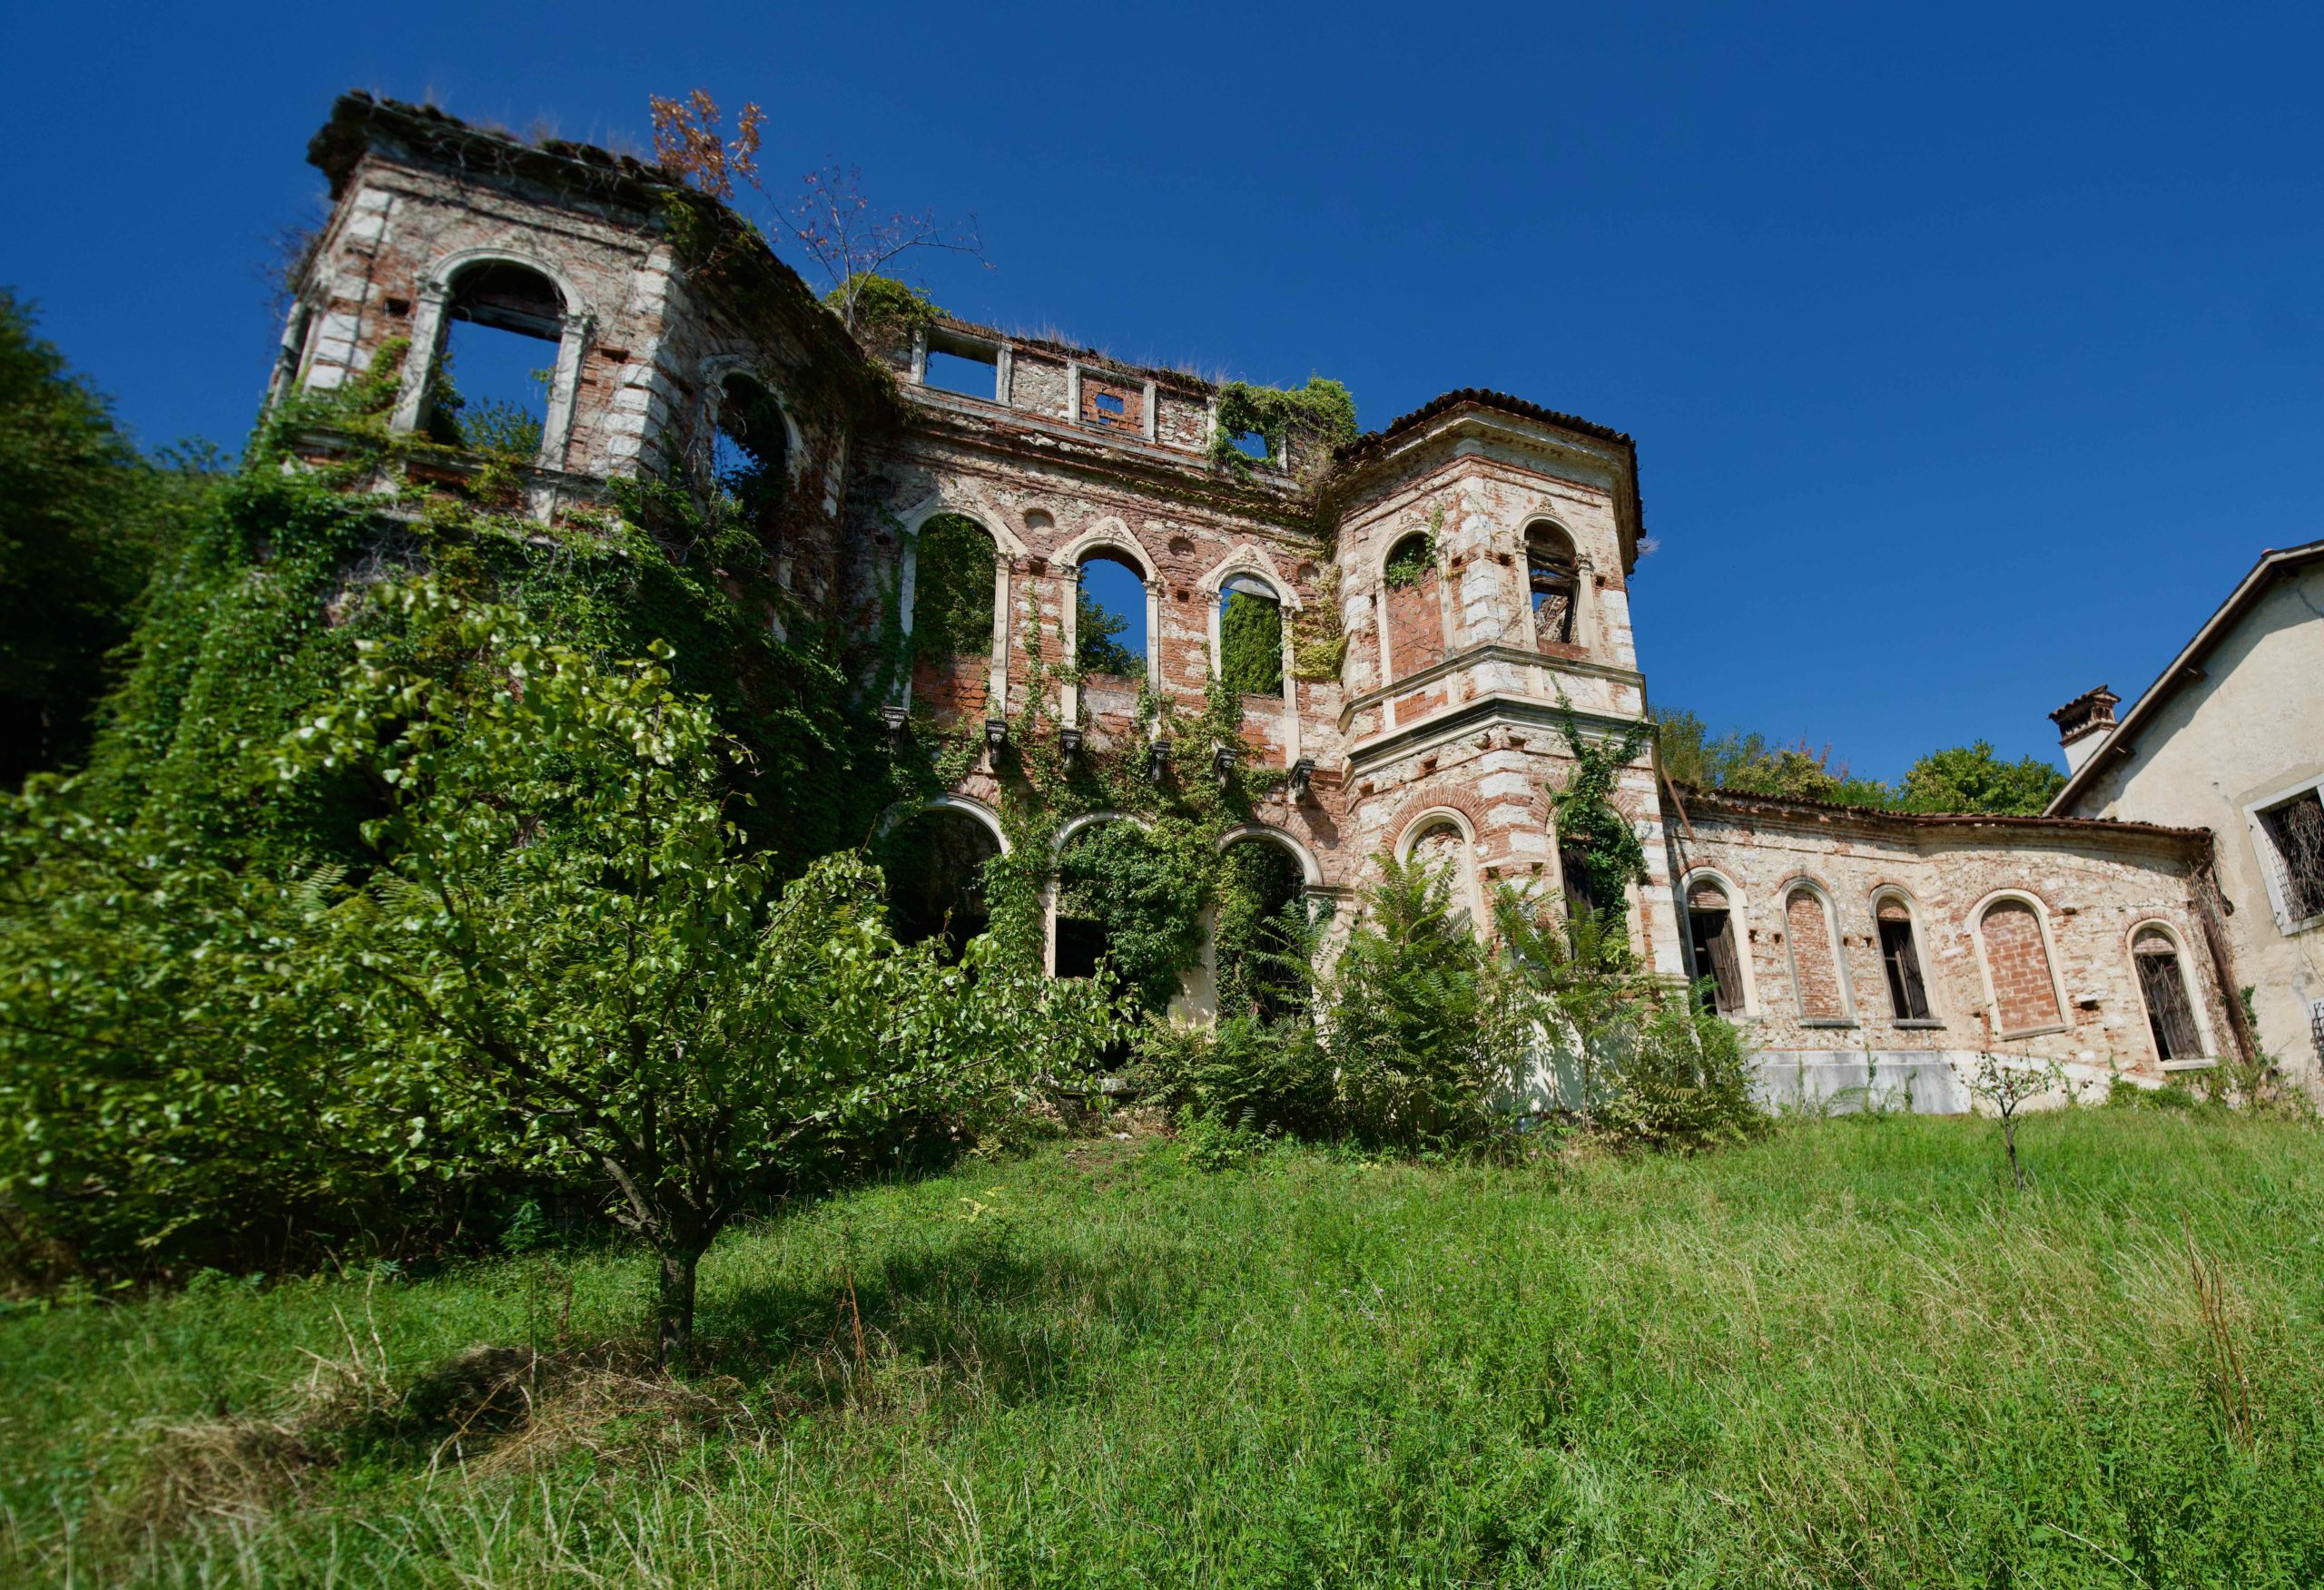 Villa Fraccaroli, Casa degli spiriti a Piovene 1 (foto di Luigi Jodice per ViPiu.it)